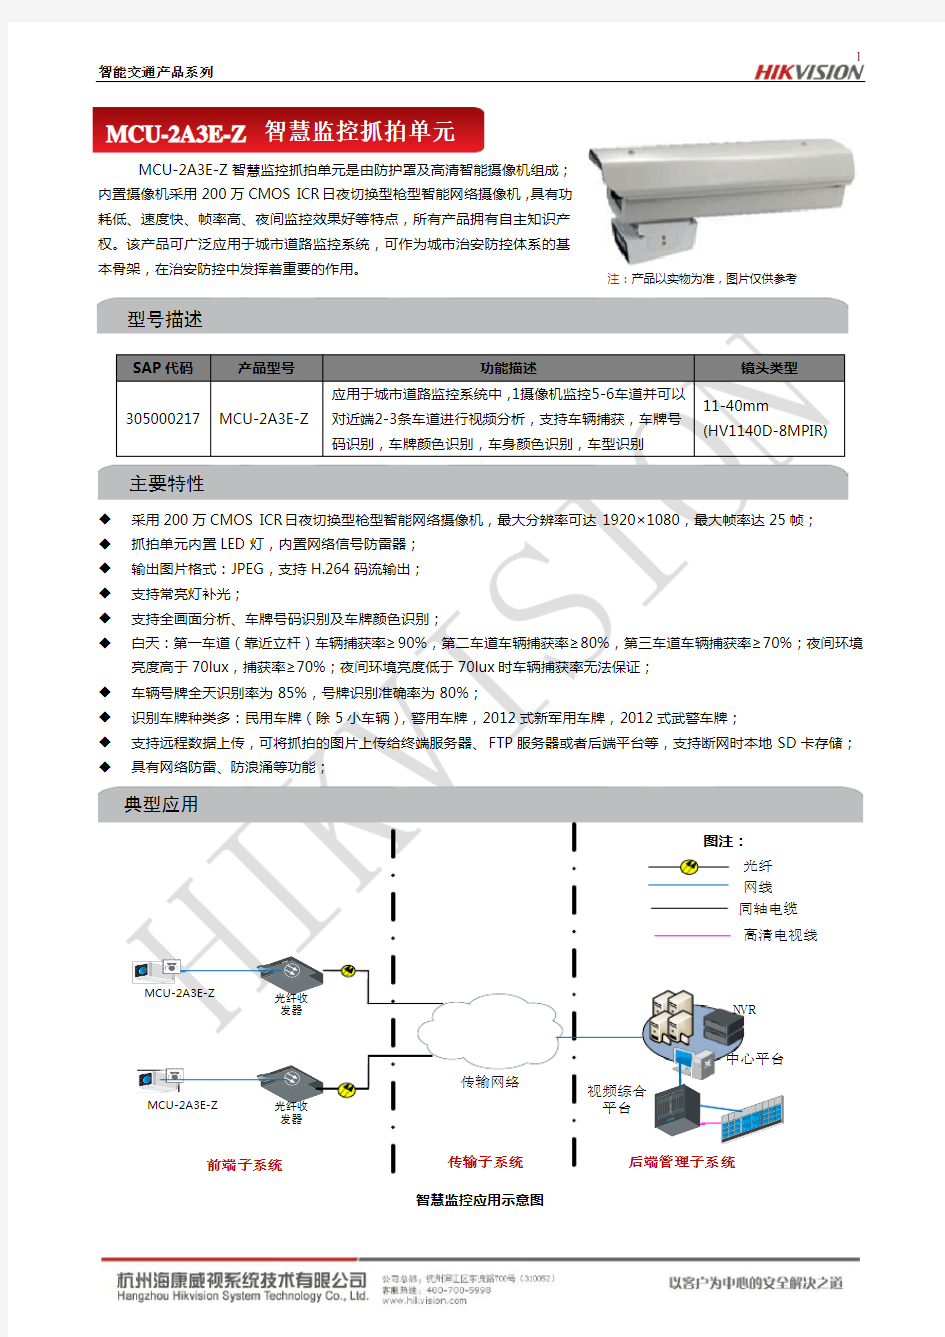 MCU-2A3E-Z智慧监控抓拍单元产品介绍